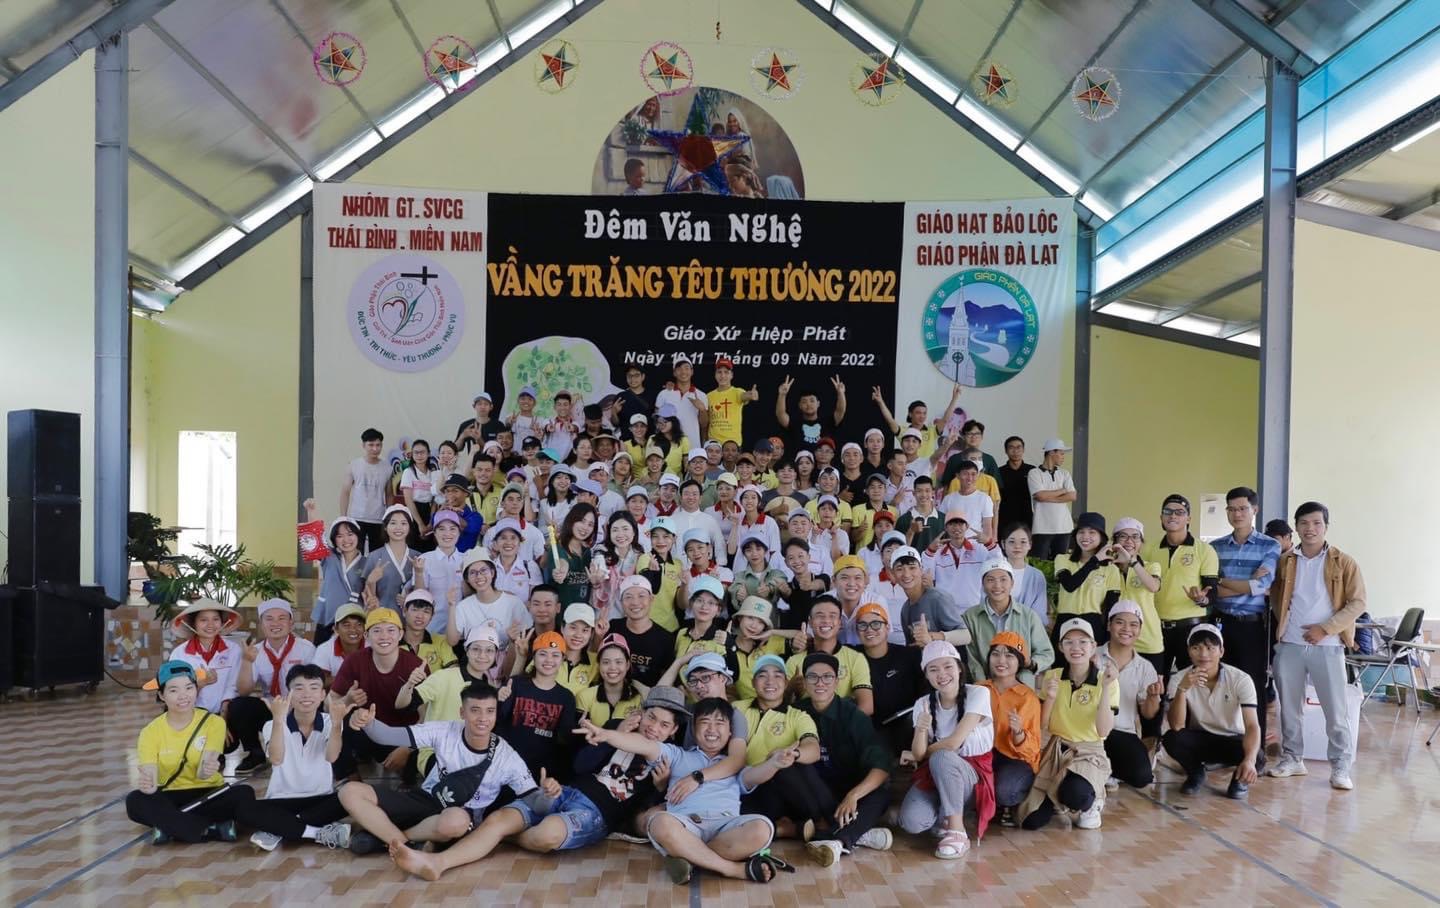 Giới trẻ SVCG Thái Bình miền Nam tổ chức Chương trình 